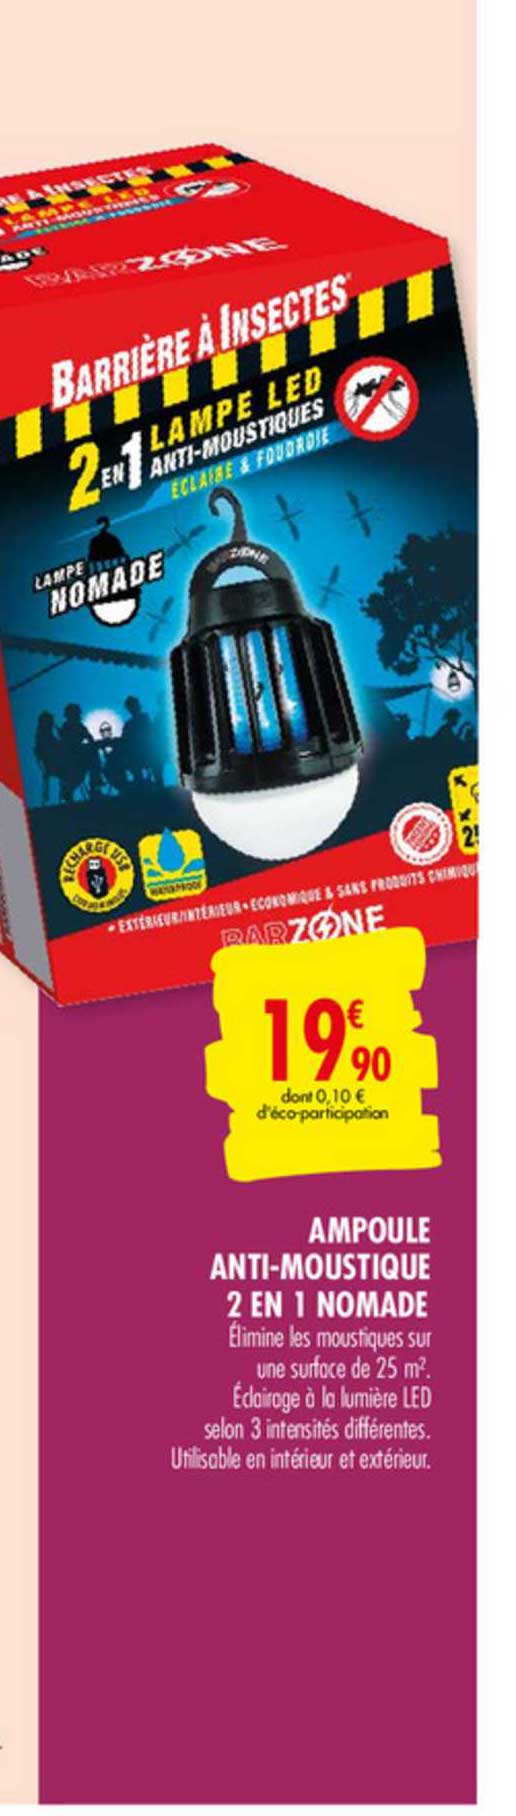 Promo Ampoule anti-moustiques 2 en 1 nomade BARZONE chez Carrefour